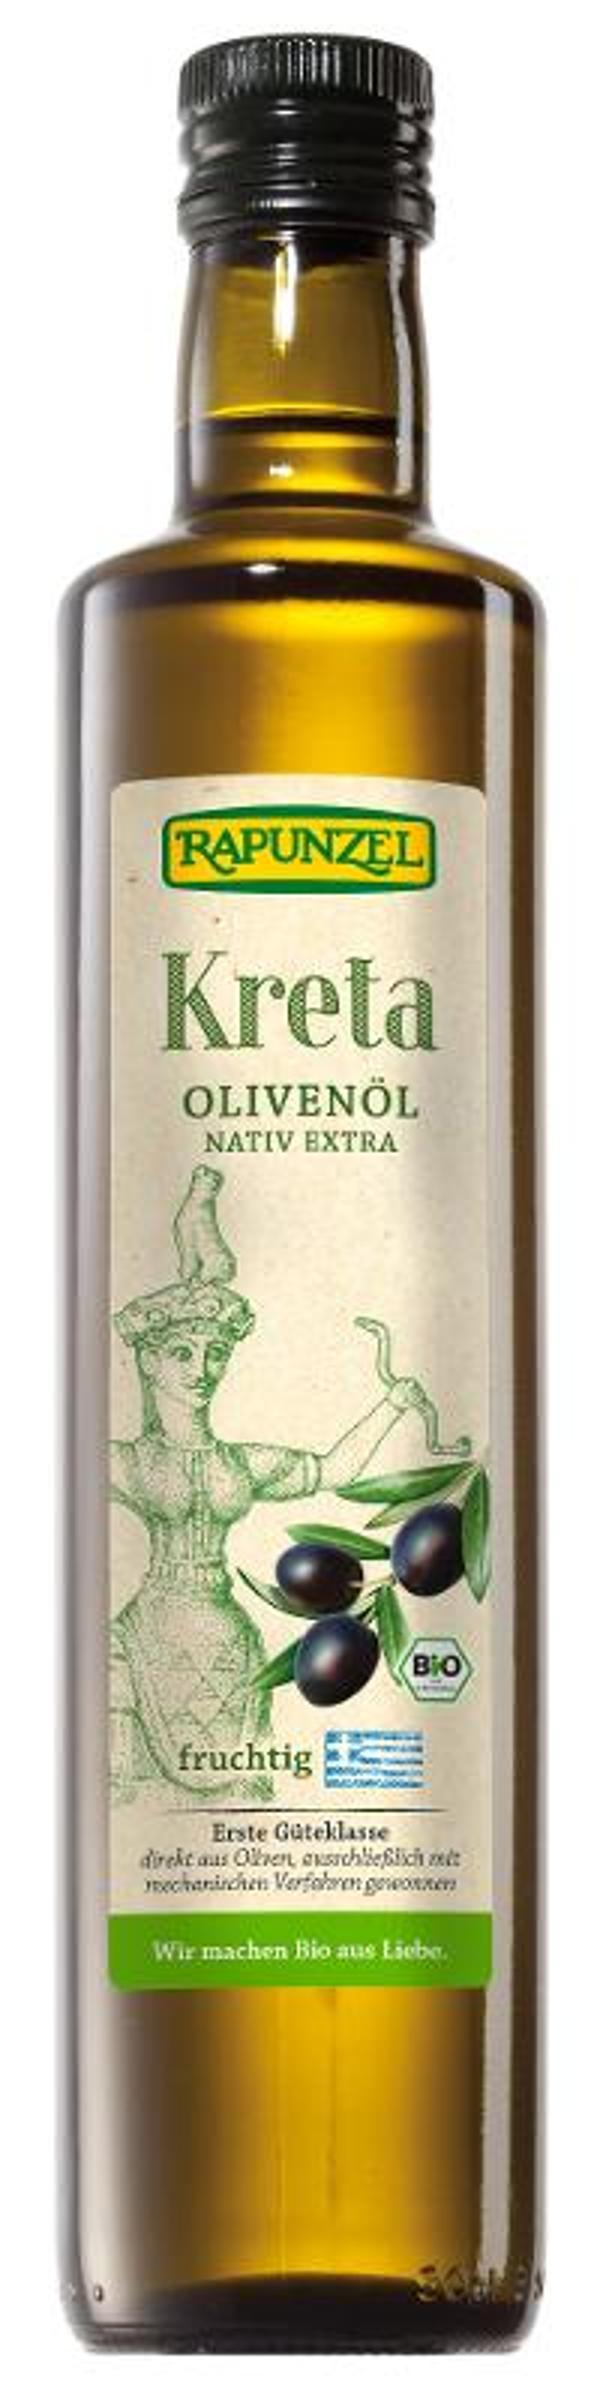 Produktfoto zu Olivenöl Kreta von Rapunzel